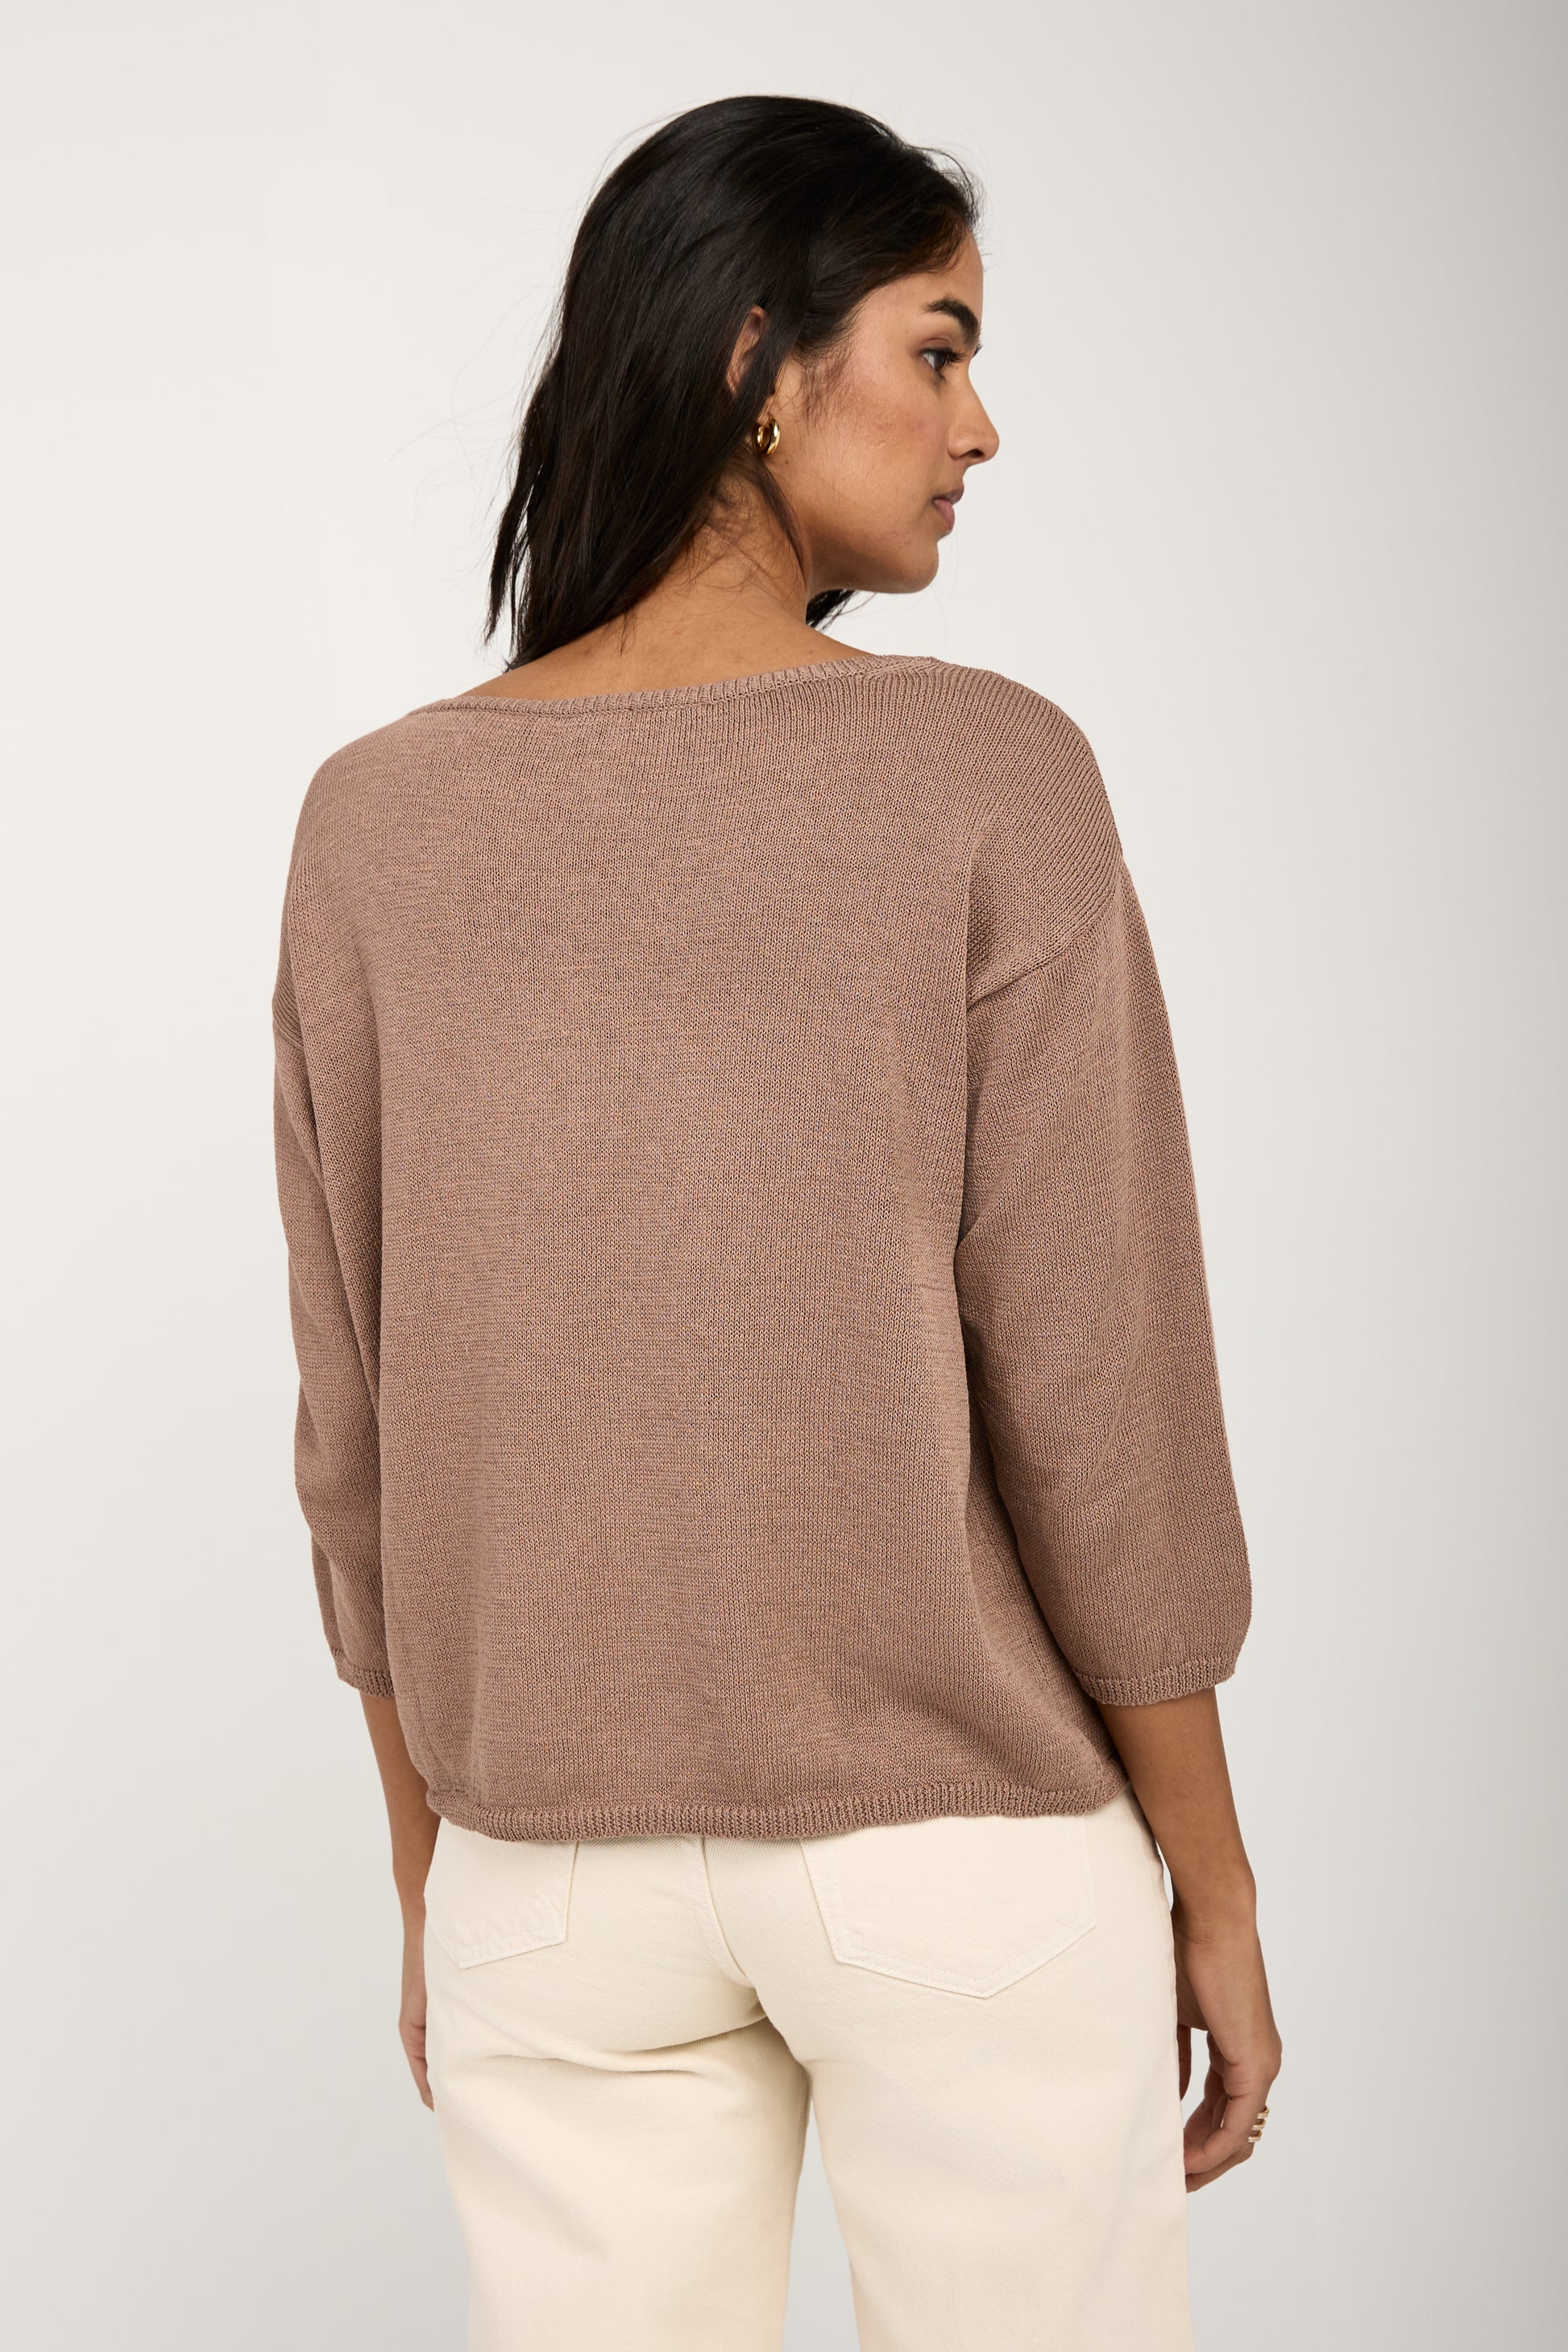 PRIVATE 0204 Cotton Silk Pullover Sweater in Skin